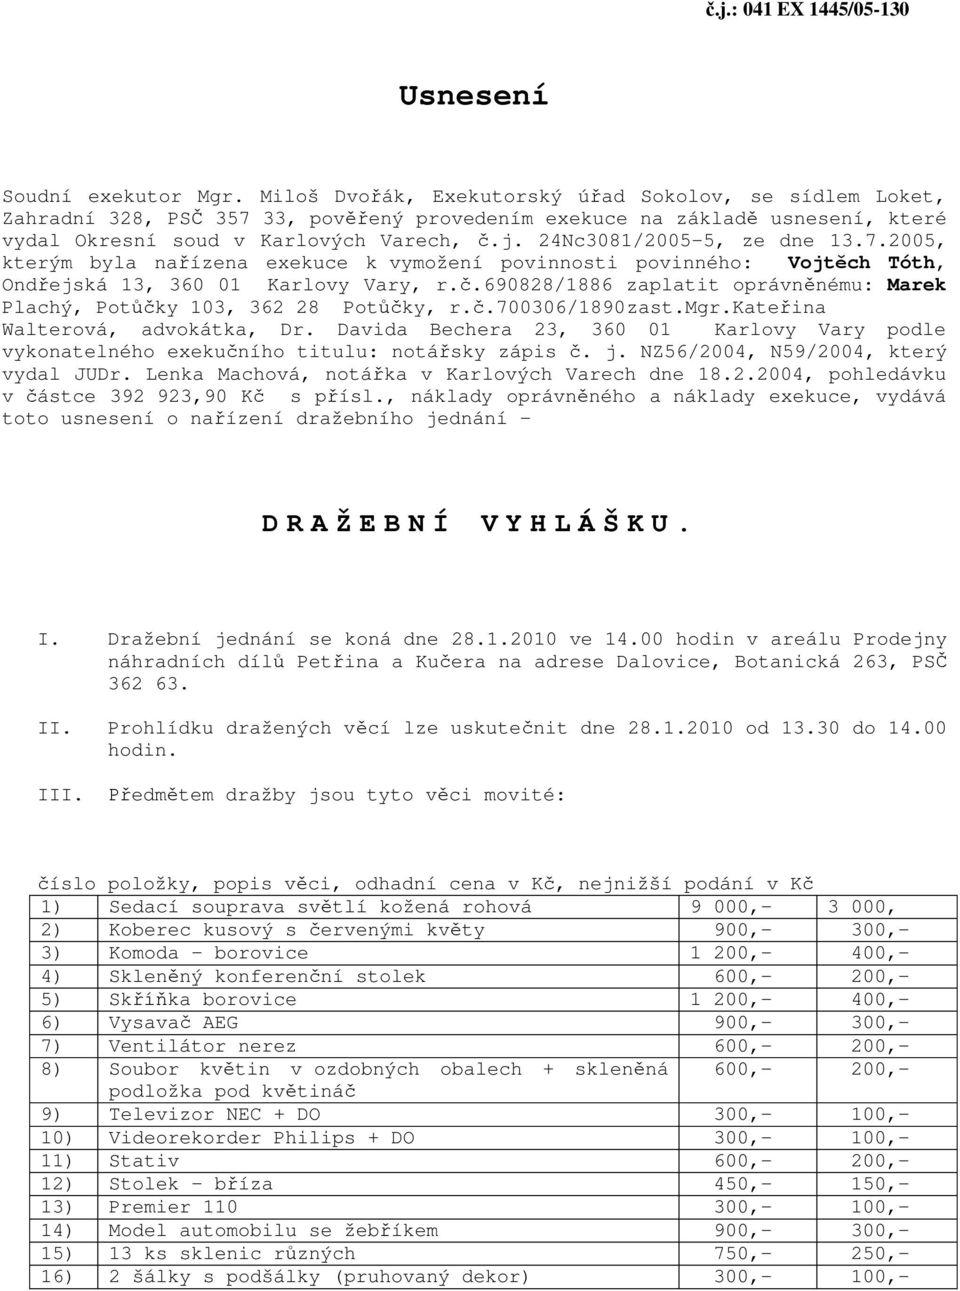 24Nc3081/2005-5, ze dne 13.7.2005, kterým byla na ízena exekuce k vymožení povinnosti povinného: Vojt ch Tóth, Ond ejská 13, 360 01 Karlovy Vary, r.